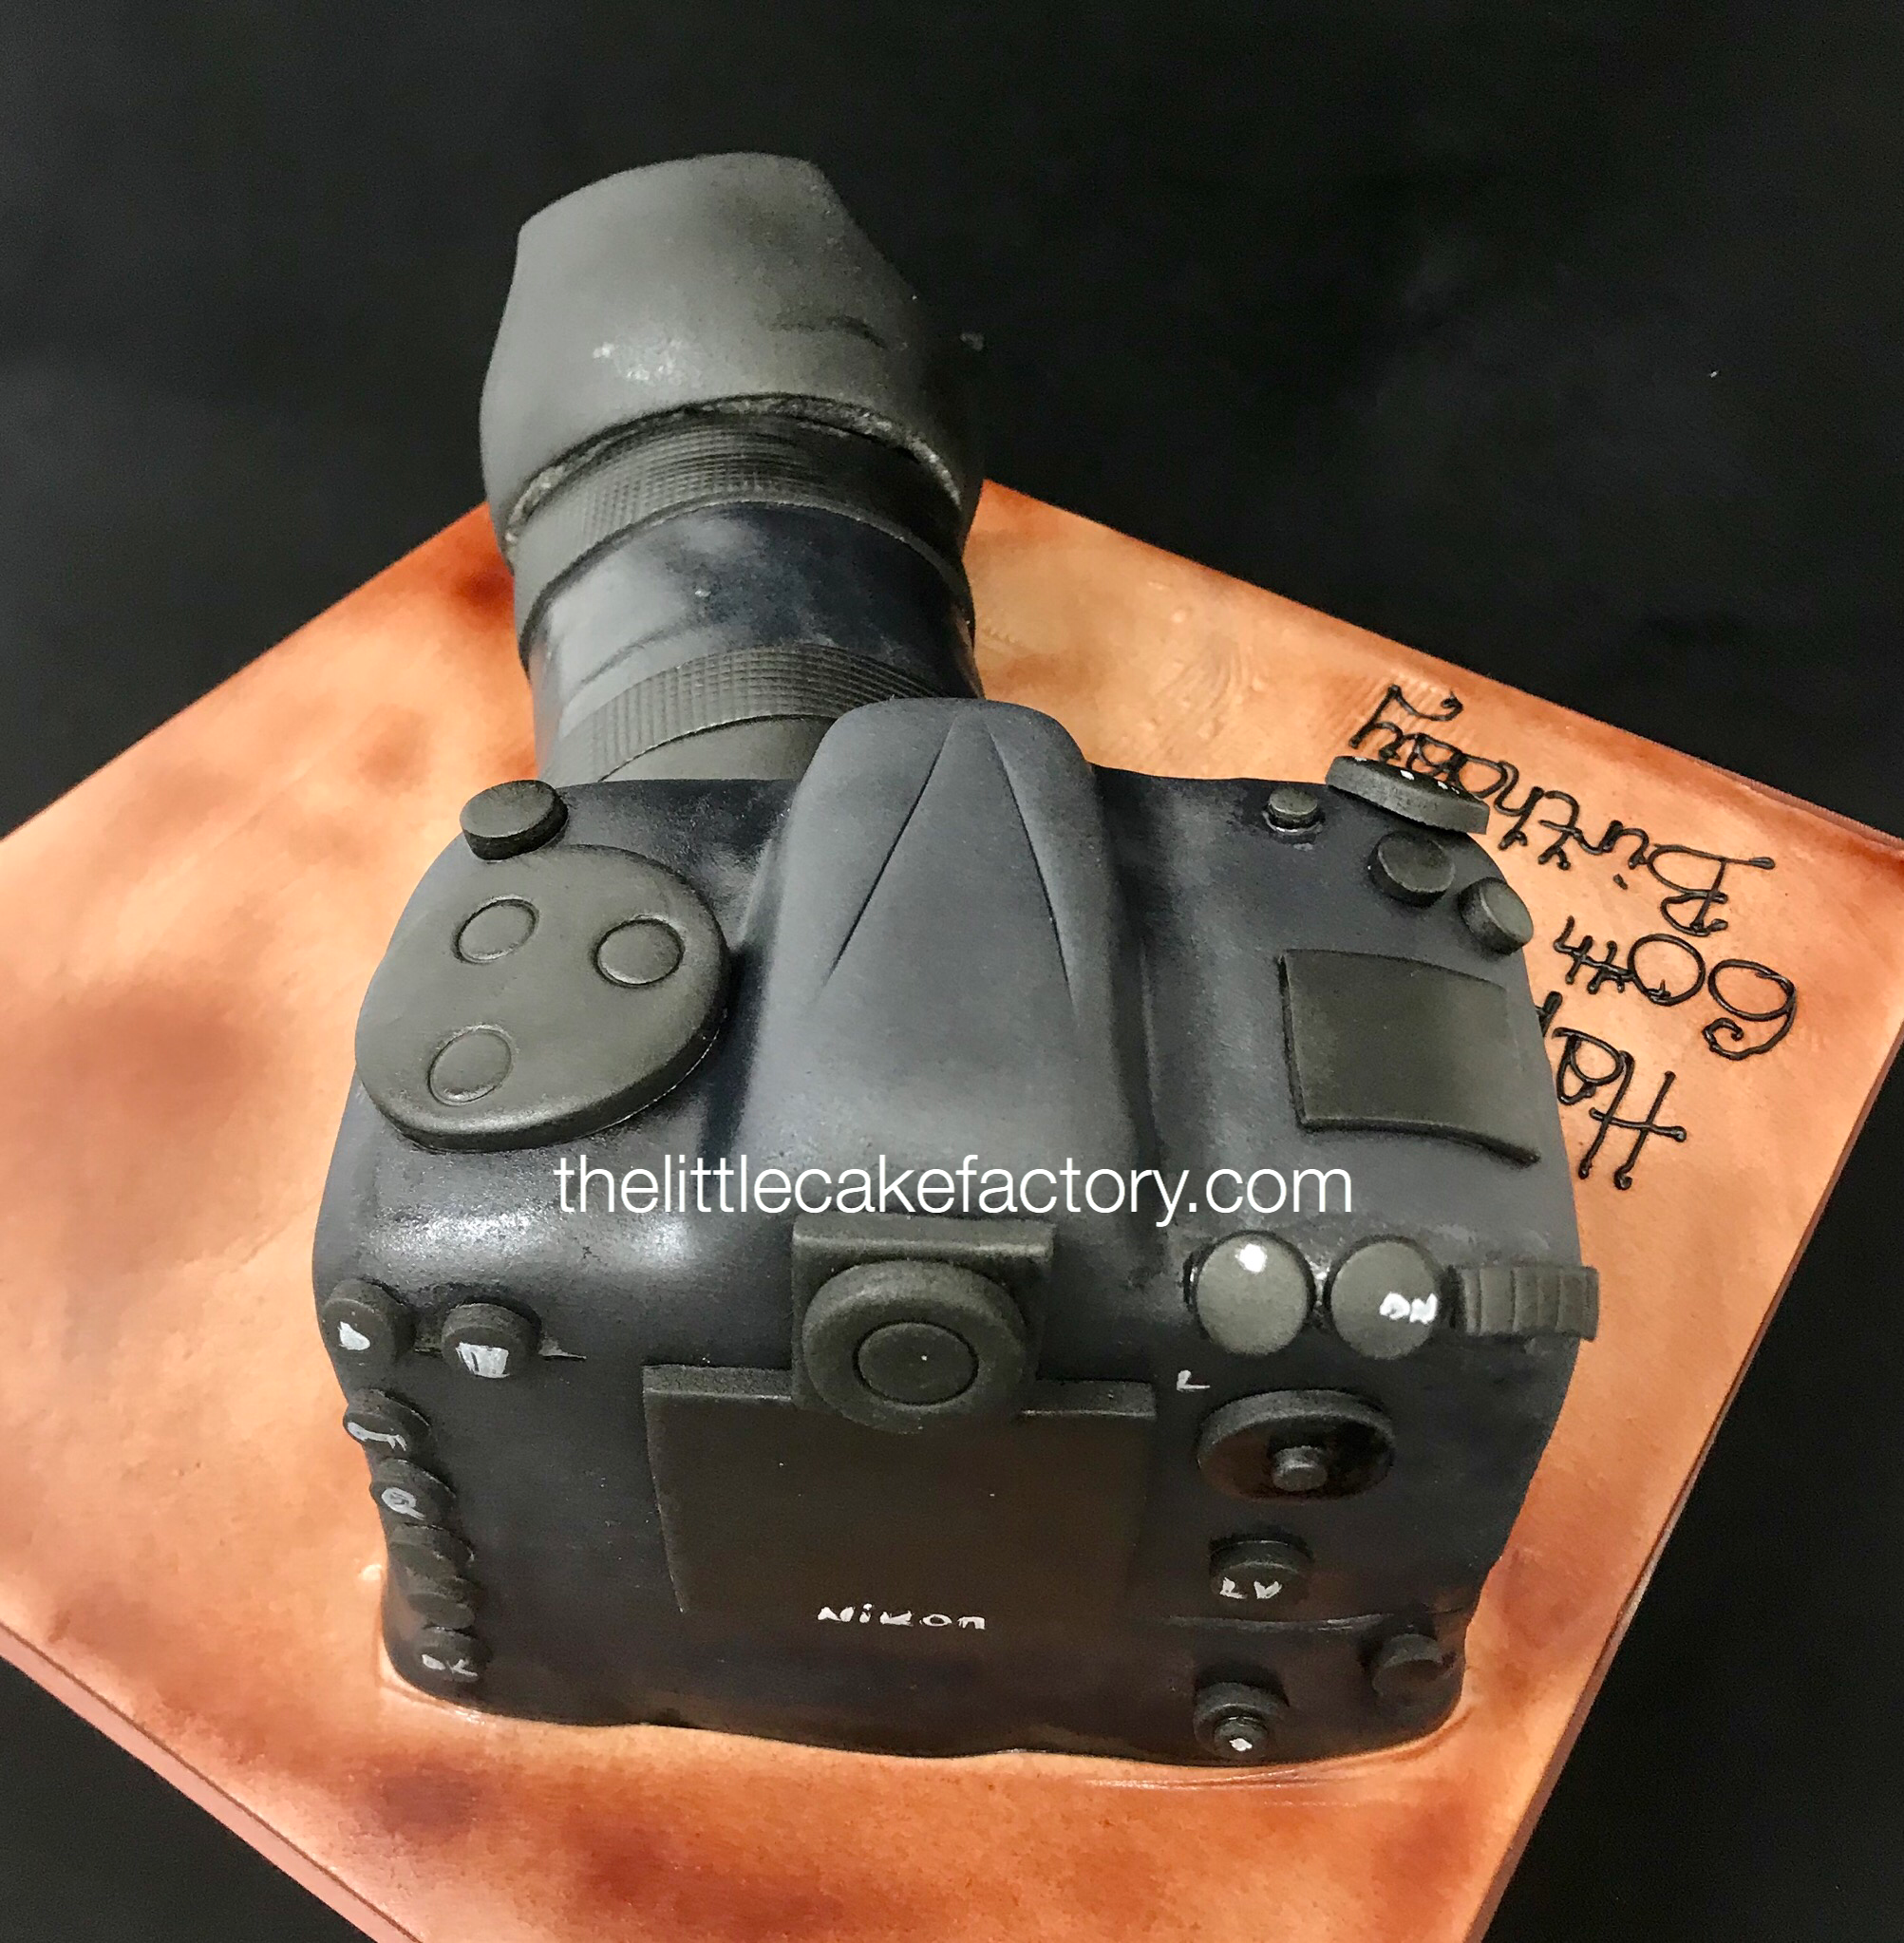 Nikon Camera cake Cake | Novelty Cakes